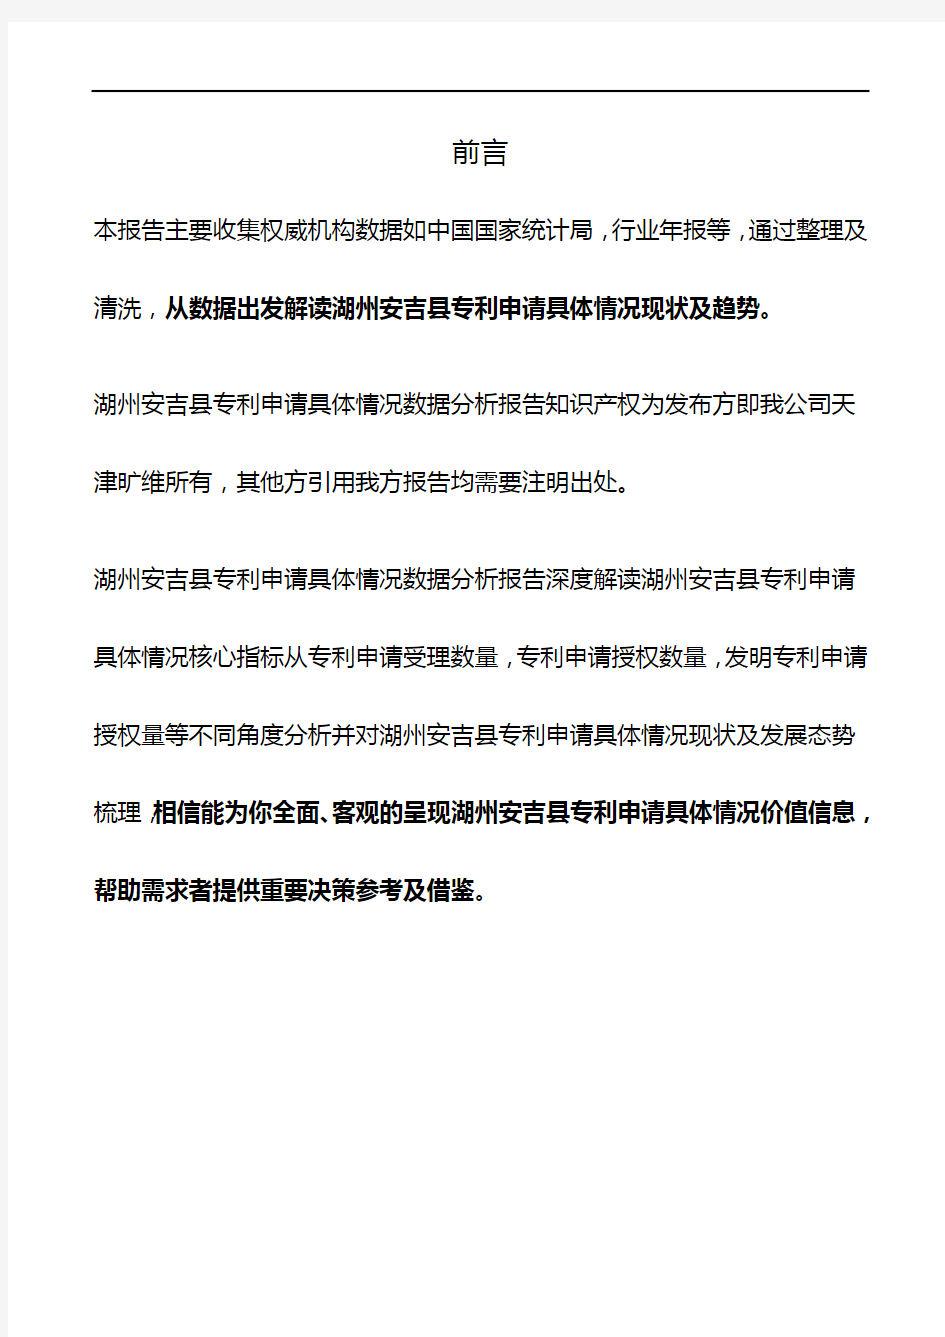 浙江省湖州安吉县专利申请具体情况3年数据分析报告2019版